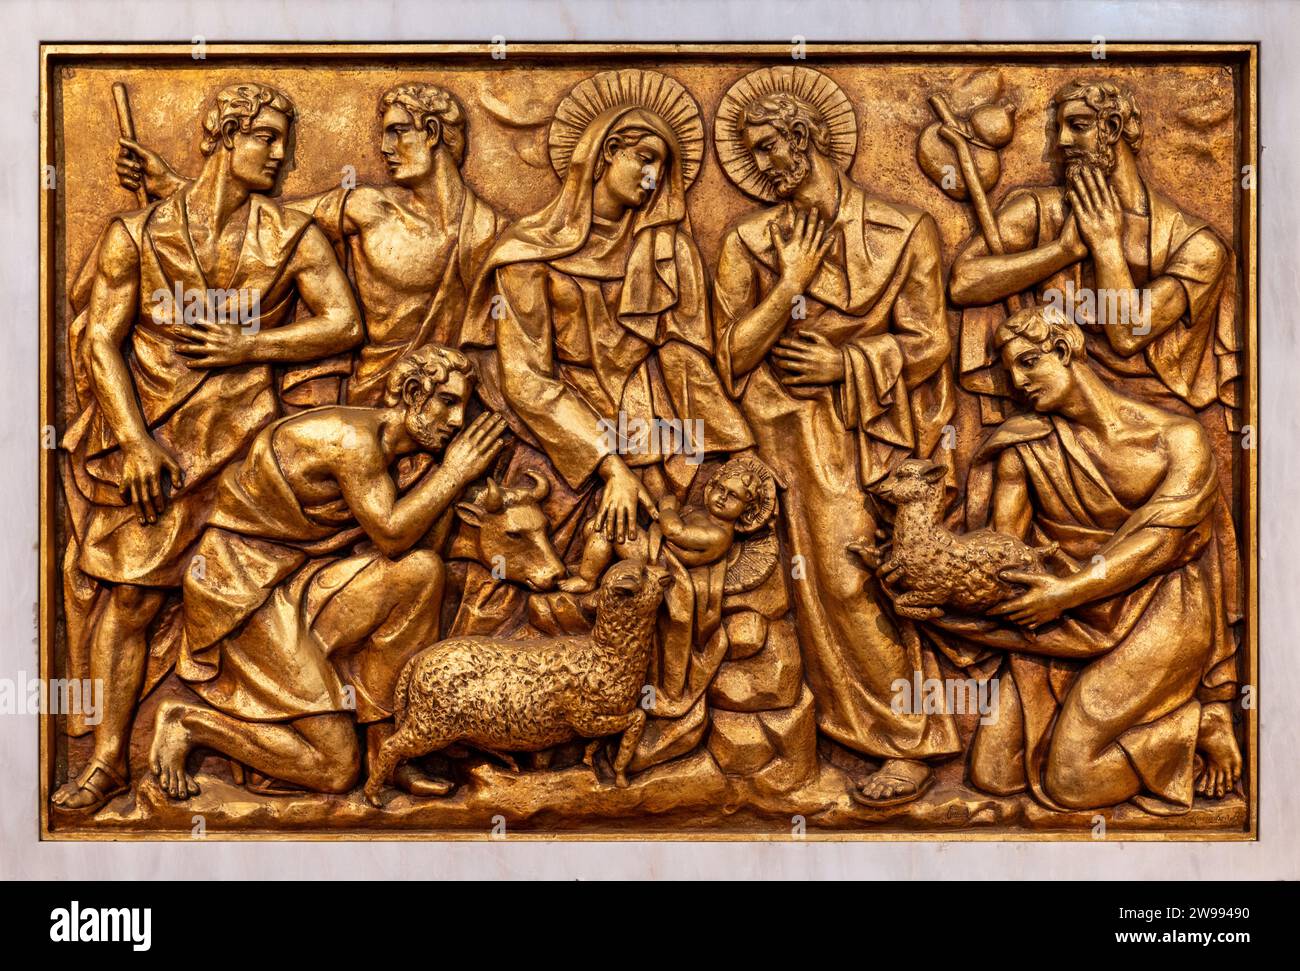 La Natividad de Jesús en Belén – Tercer Misterio gozoso. Una escultura en relieve en la Basílica de Nuestra Señora del Rosario de Fátima. Foto de stock